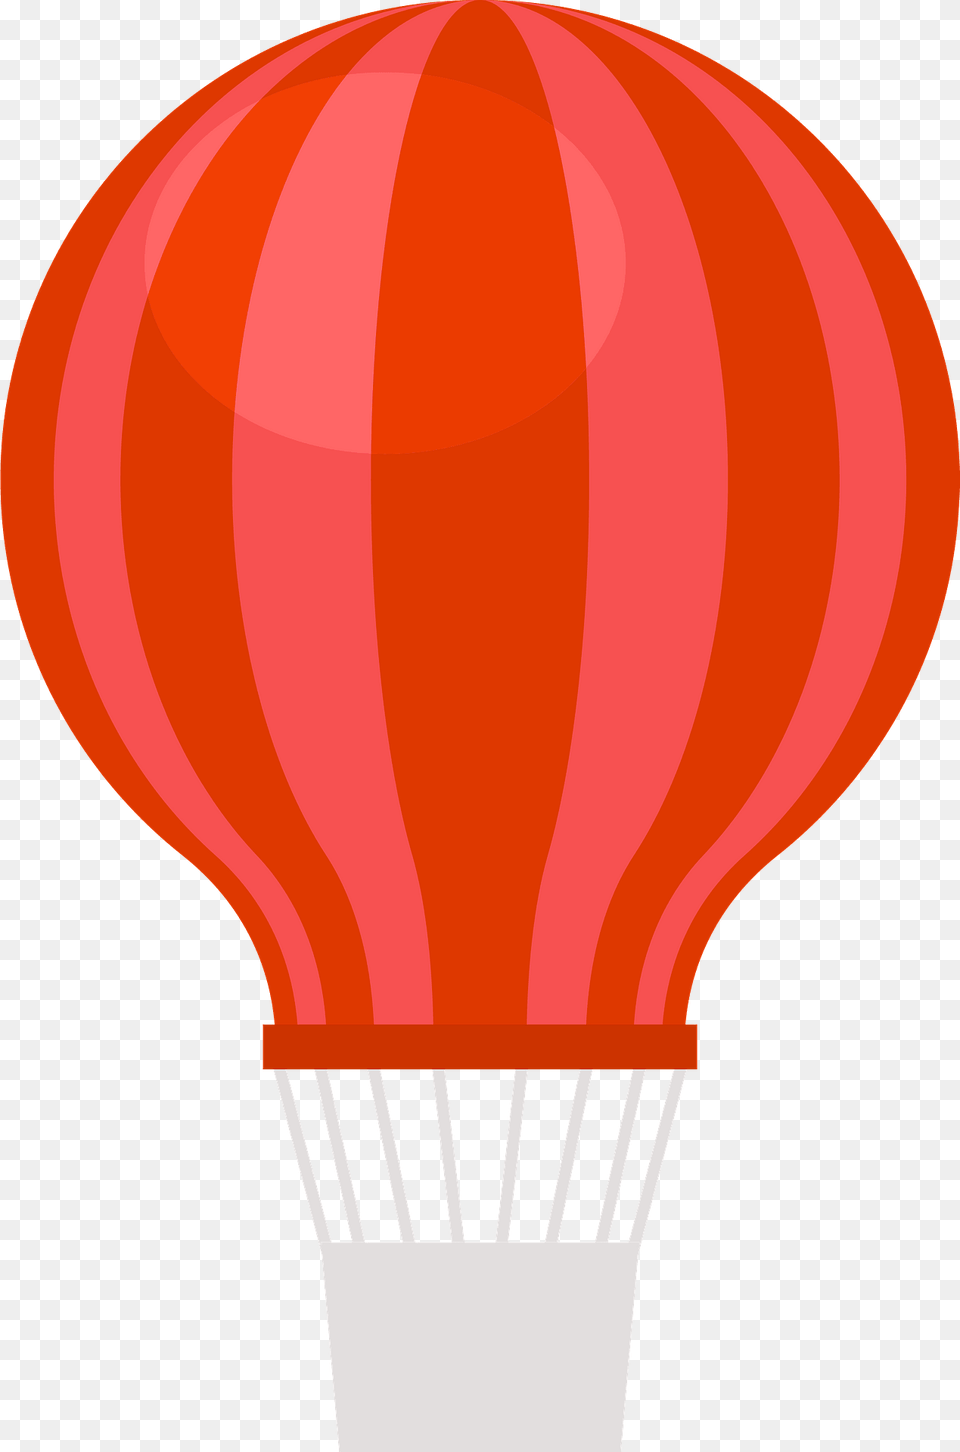 Hot Air Balloon Clipart, Aircraft, Transportation, Vehicle, Hot Air Balloon Free Png Download